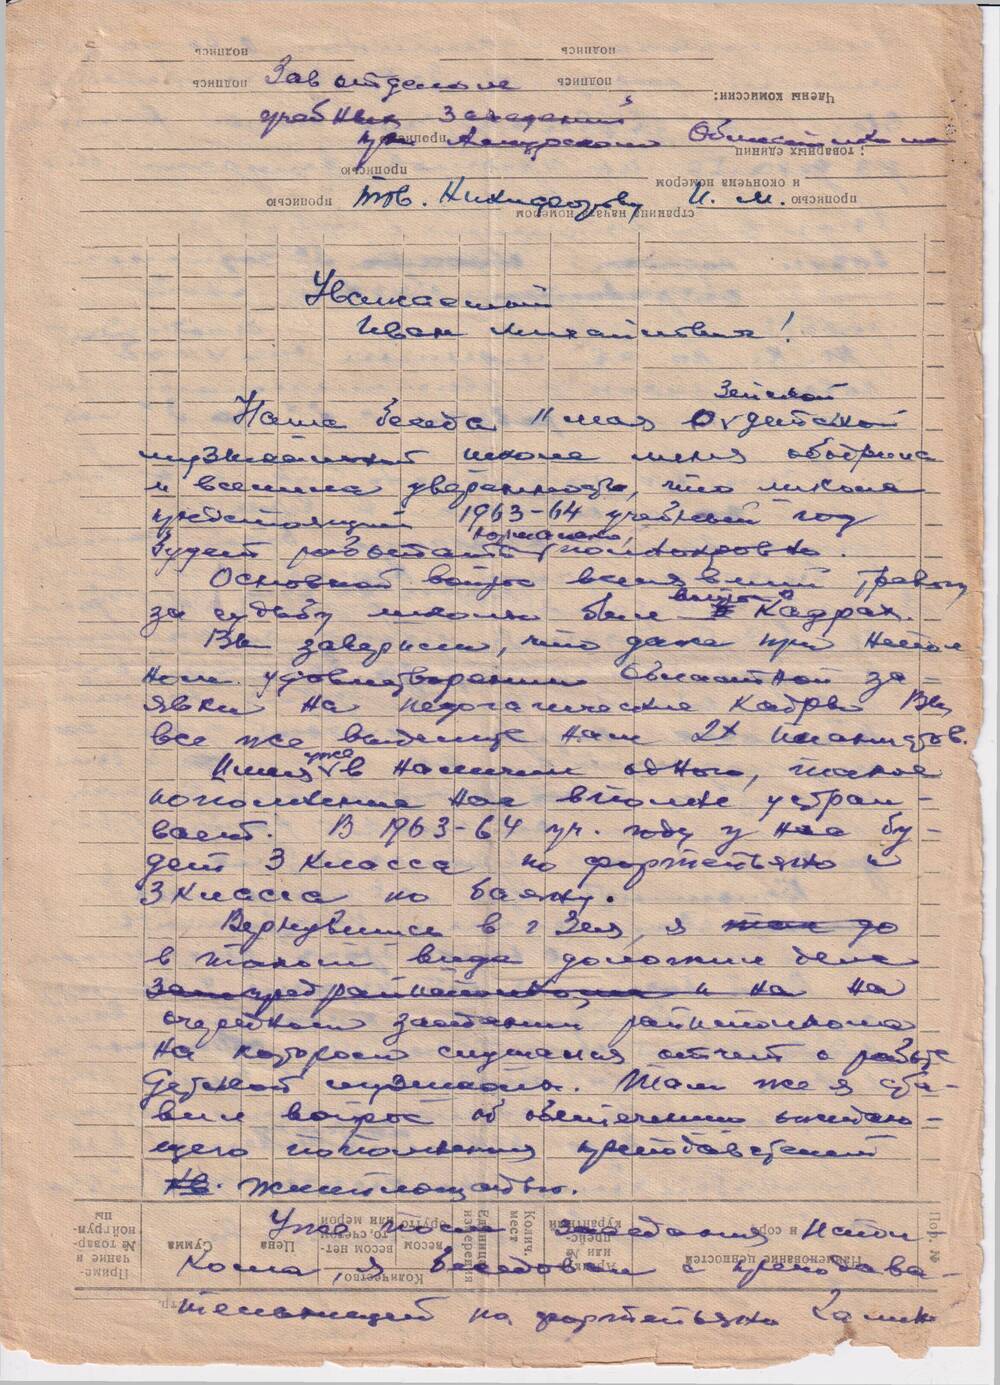 Письмо (рукописное, 2 листа) Никифорову И.М., зав. отделом учебных заведений при  Амурском  облисполкоме от  Конзы Г.А. от 24 мая 1963 года.